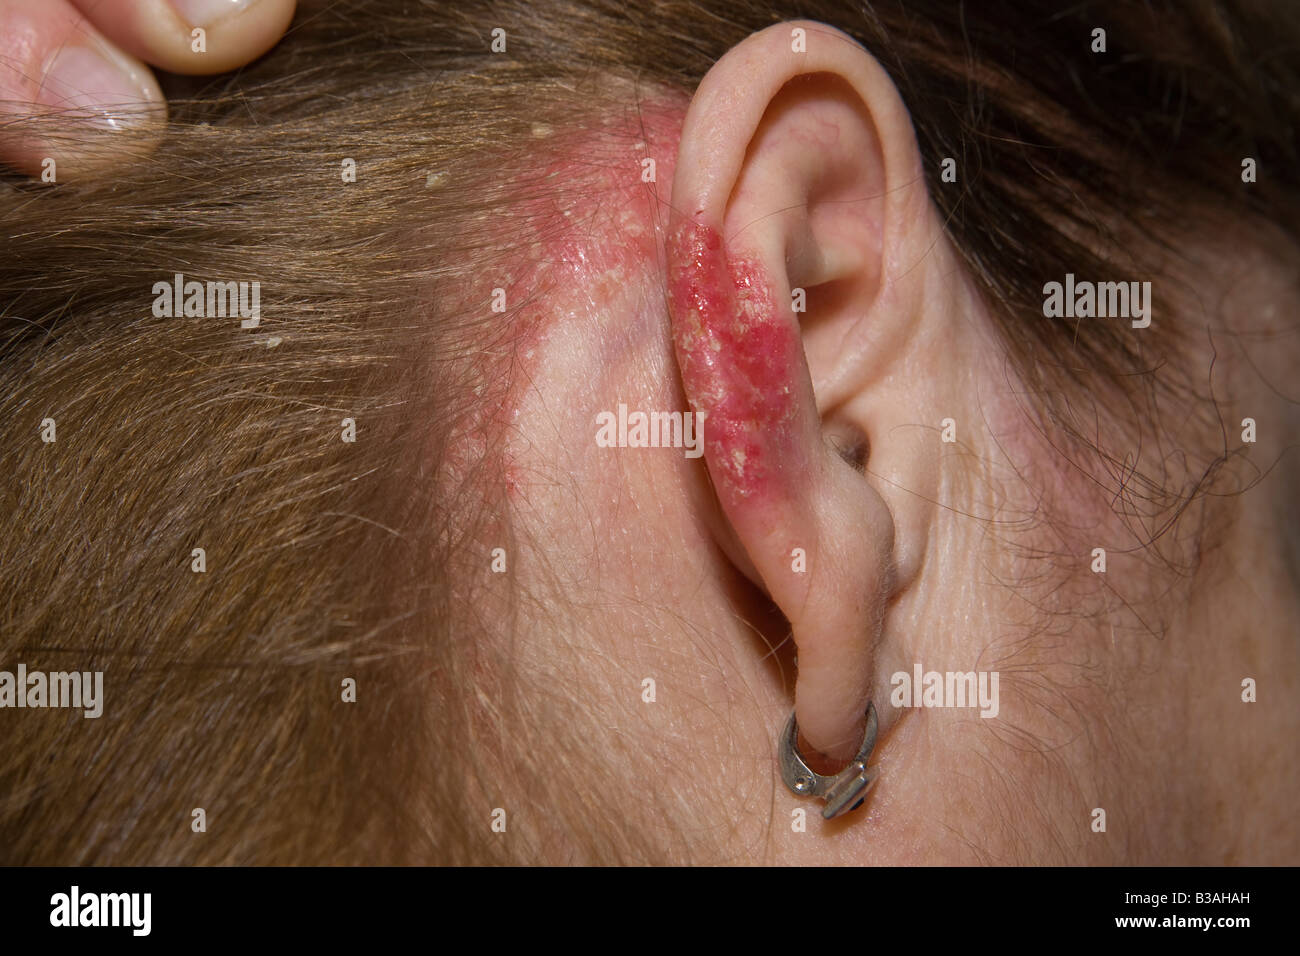 Psoriasis Skin Dermatology Stockfotos und -bilder Kaufen - Alamy